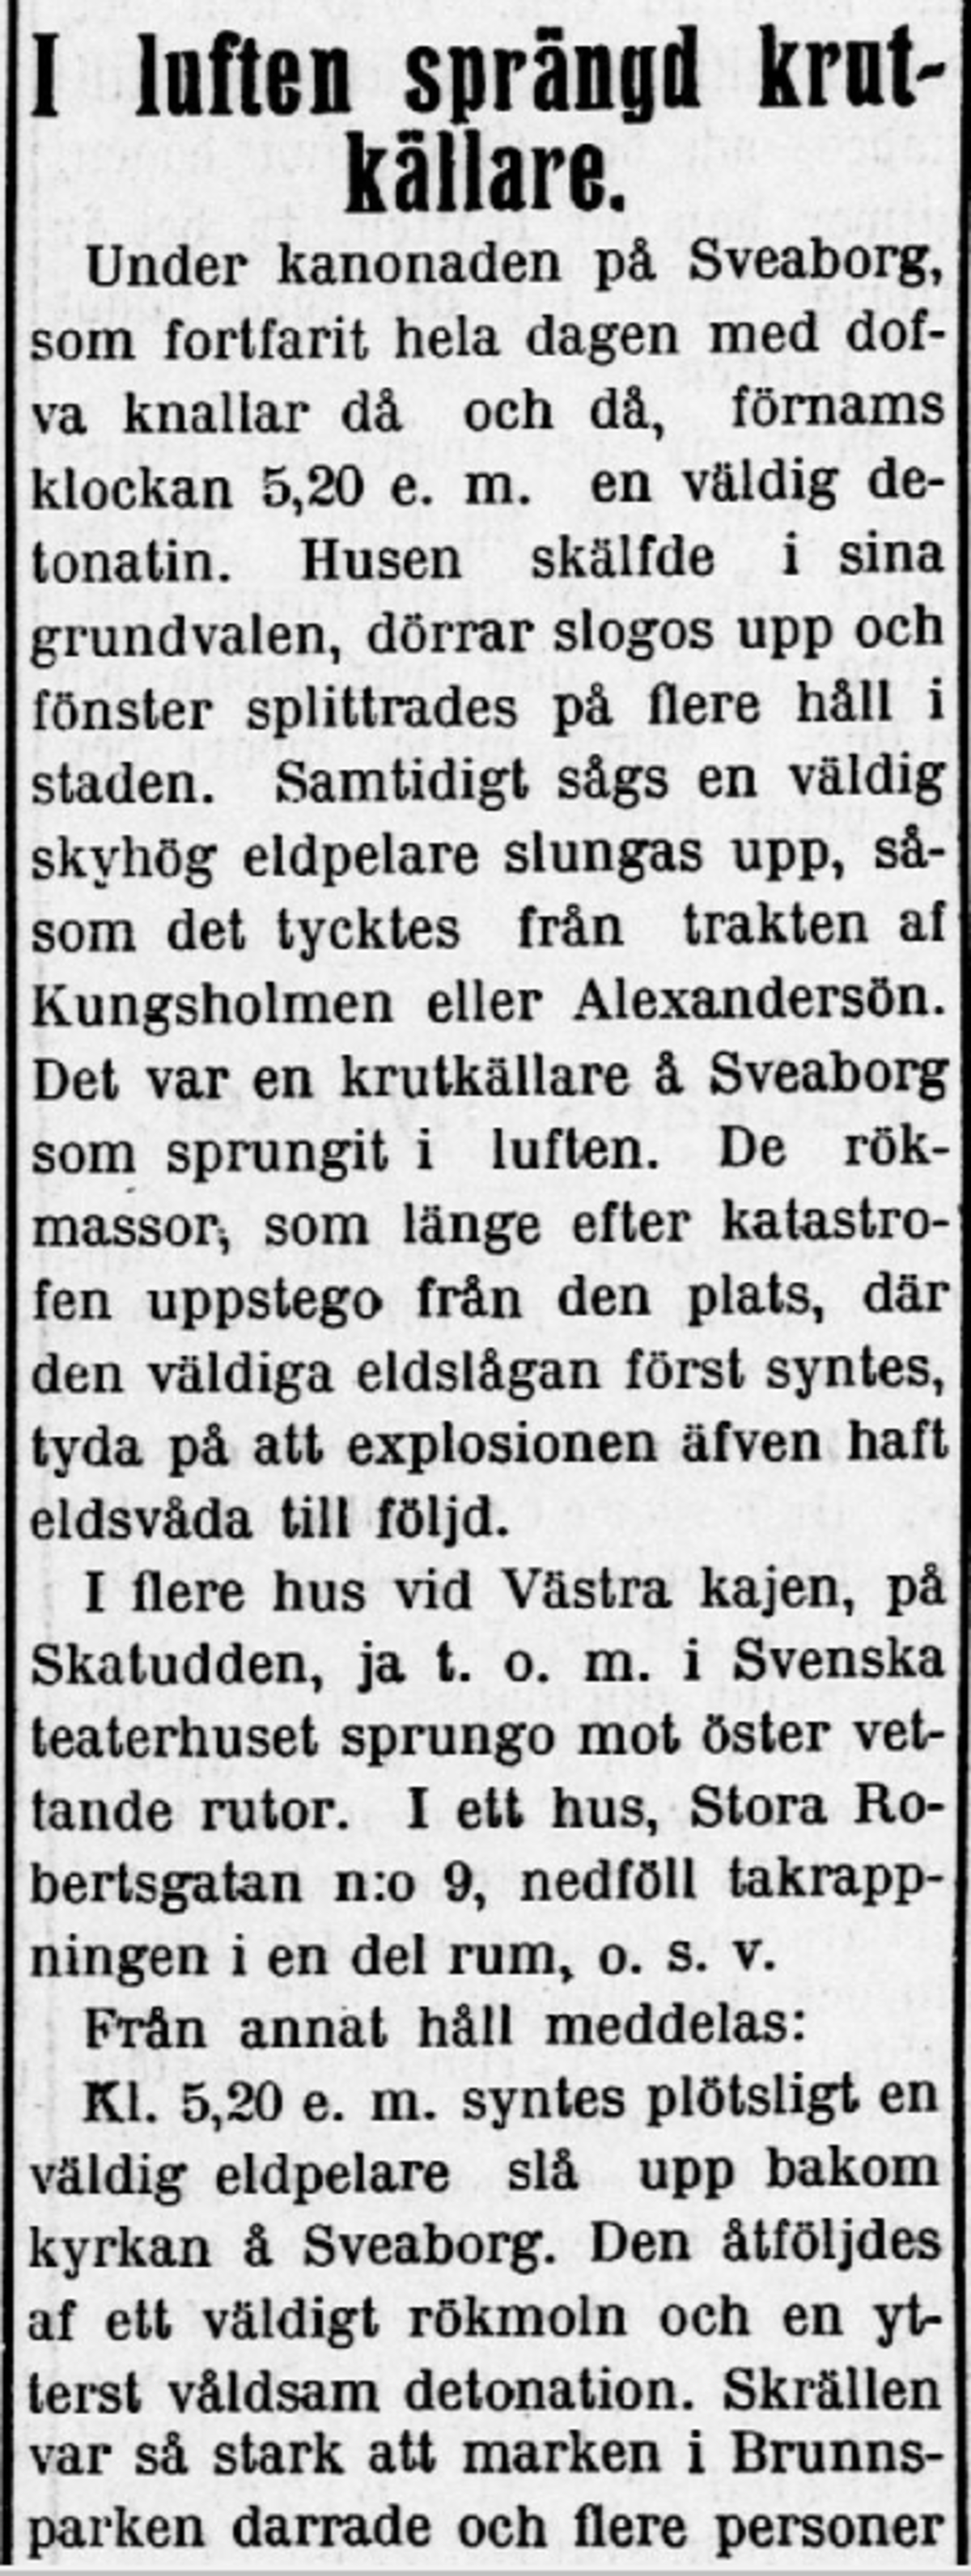 Veckobladet rapporterade om händelserna på Sveaborg och explosionen av ammunitionslagret. 